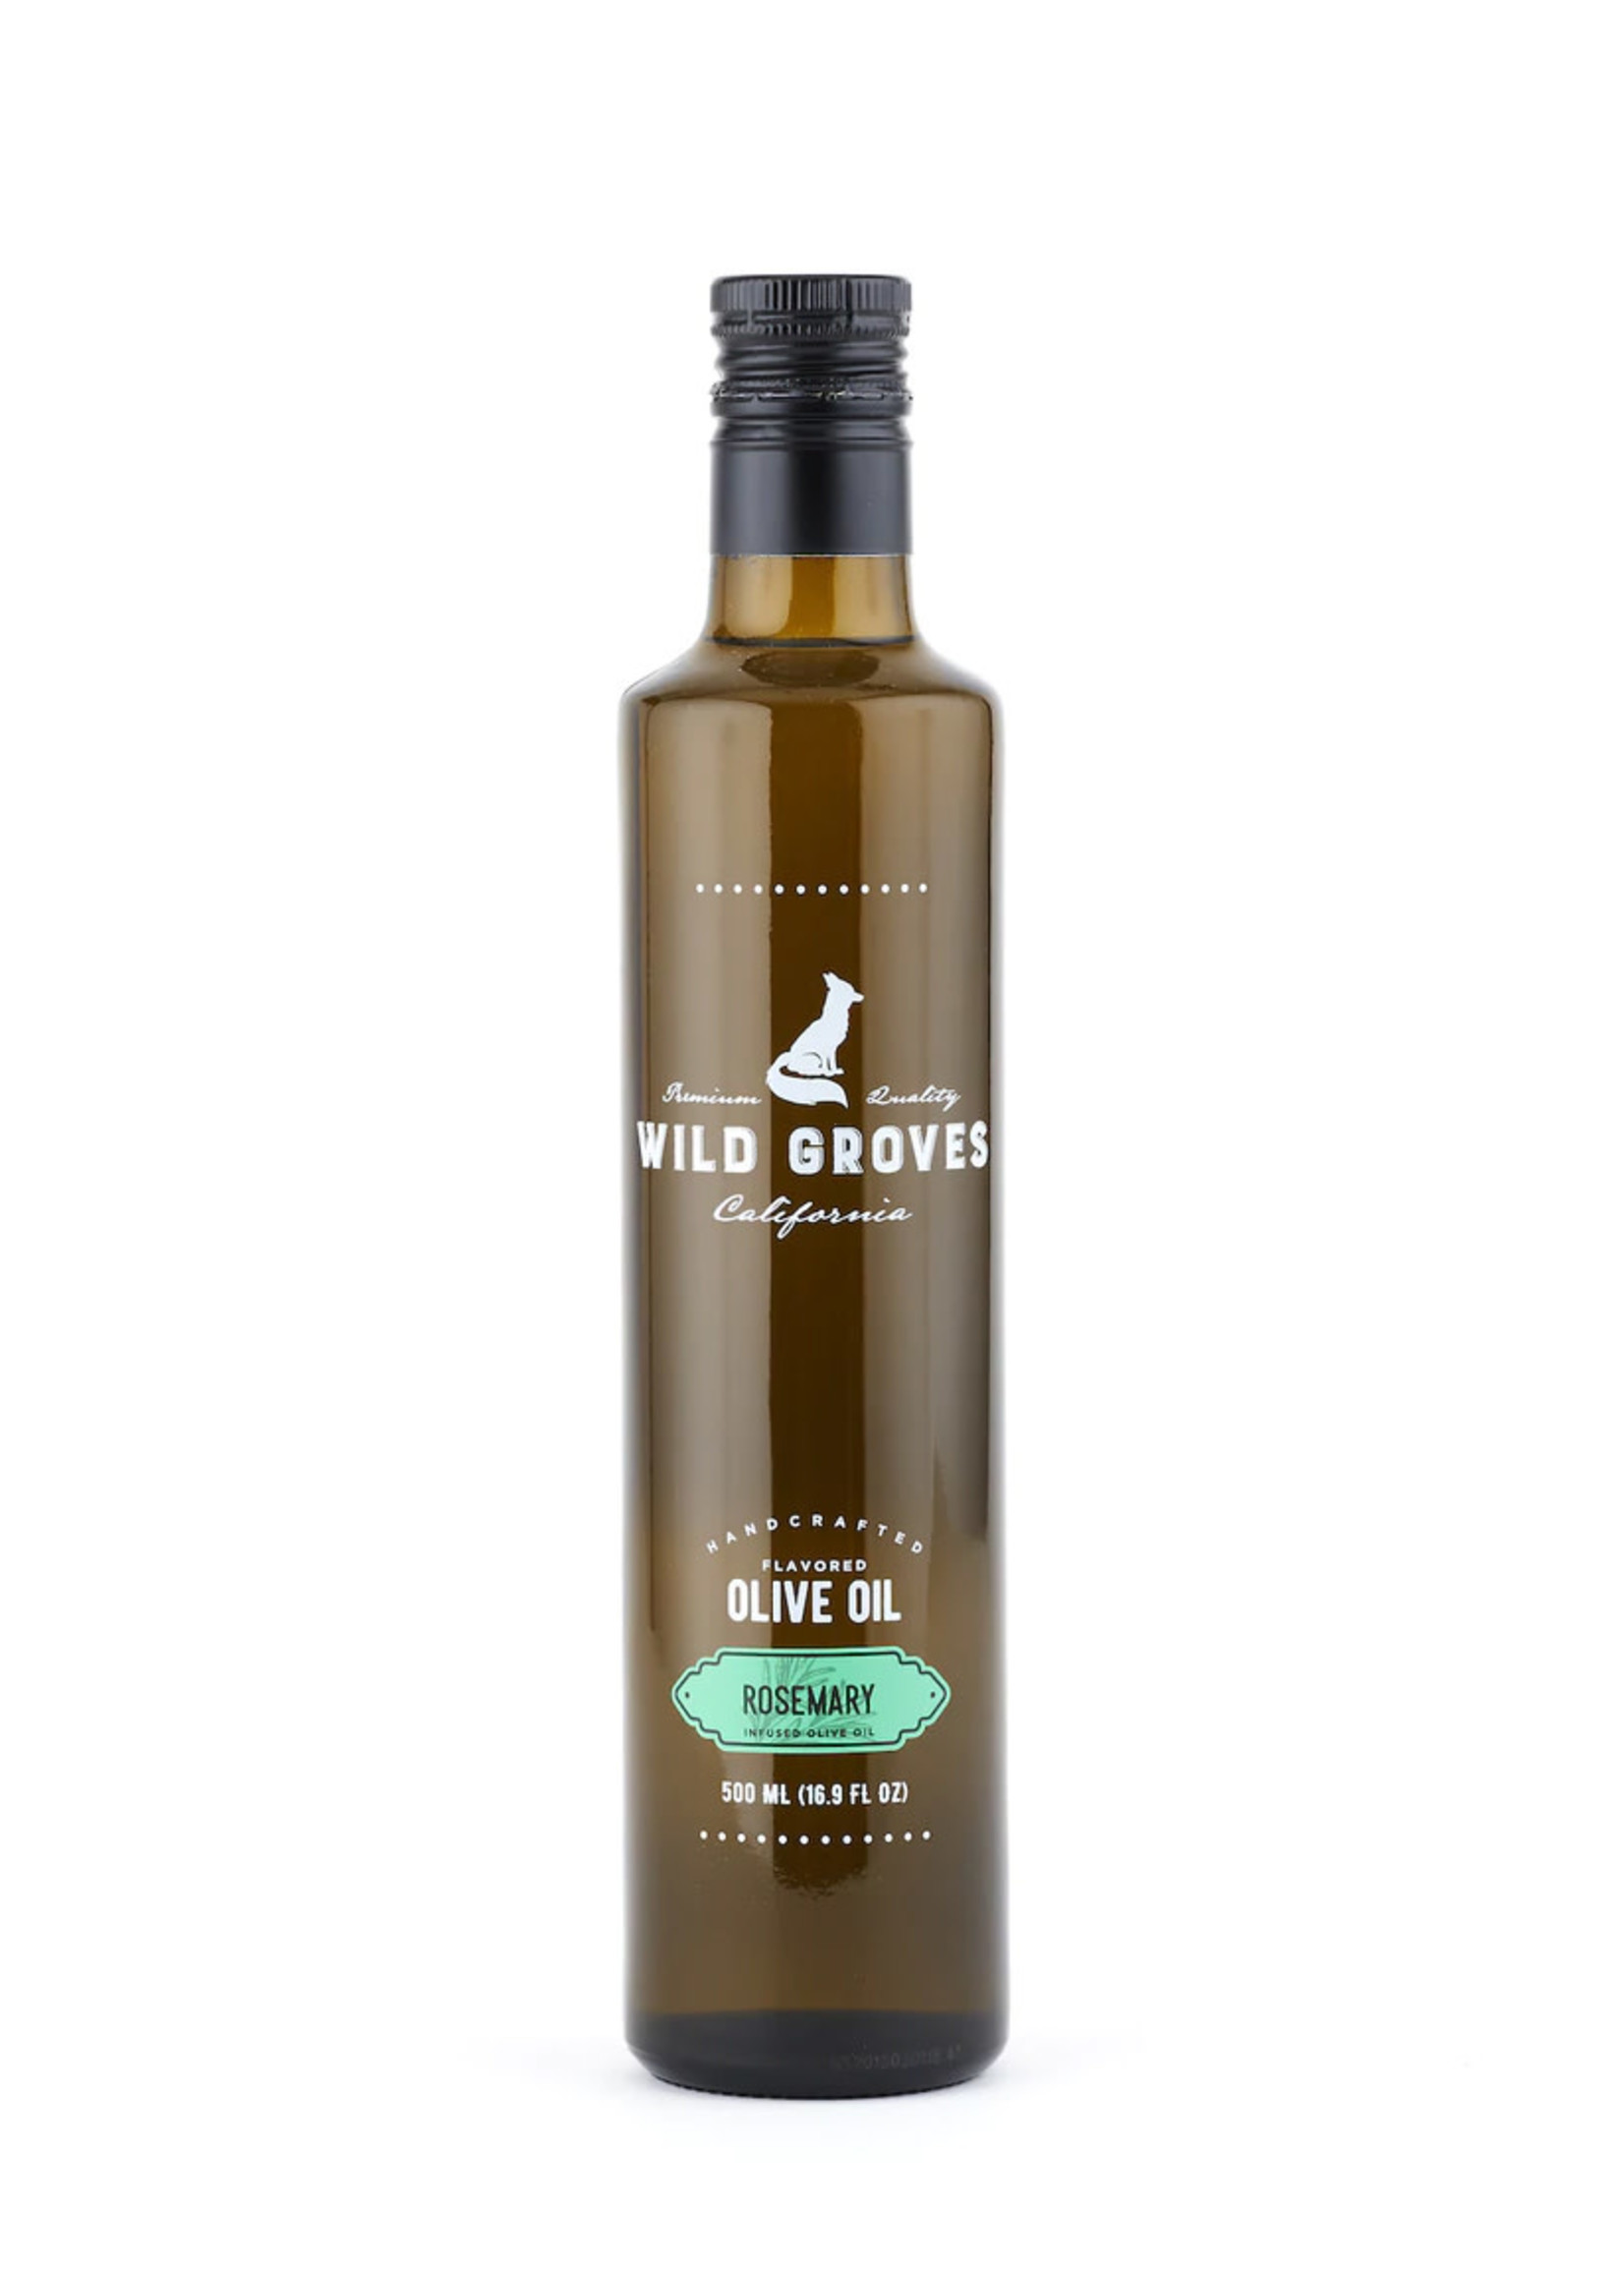 Wild Groves Wild Groves Rosemary Olive Oil 500 ML